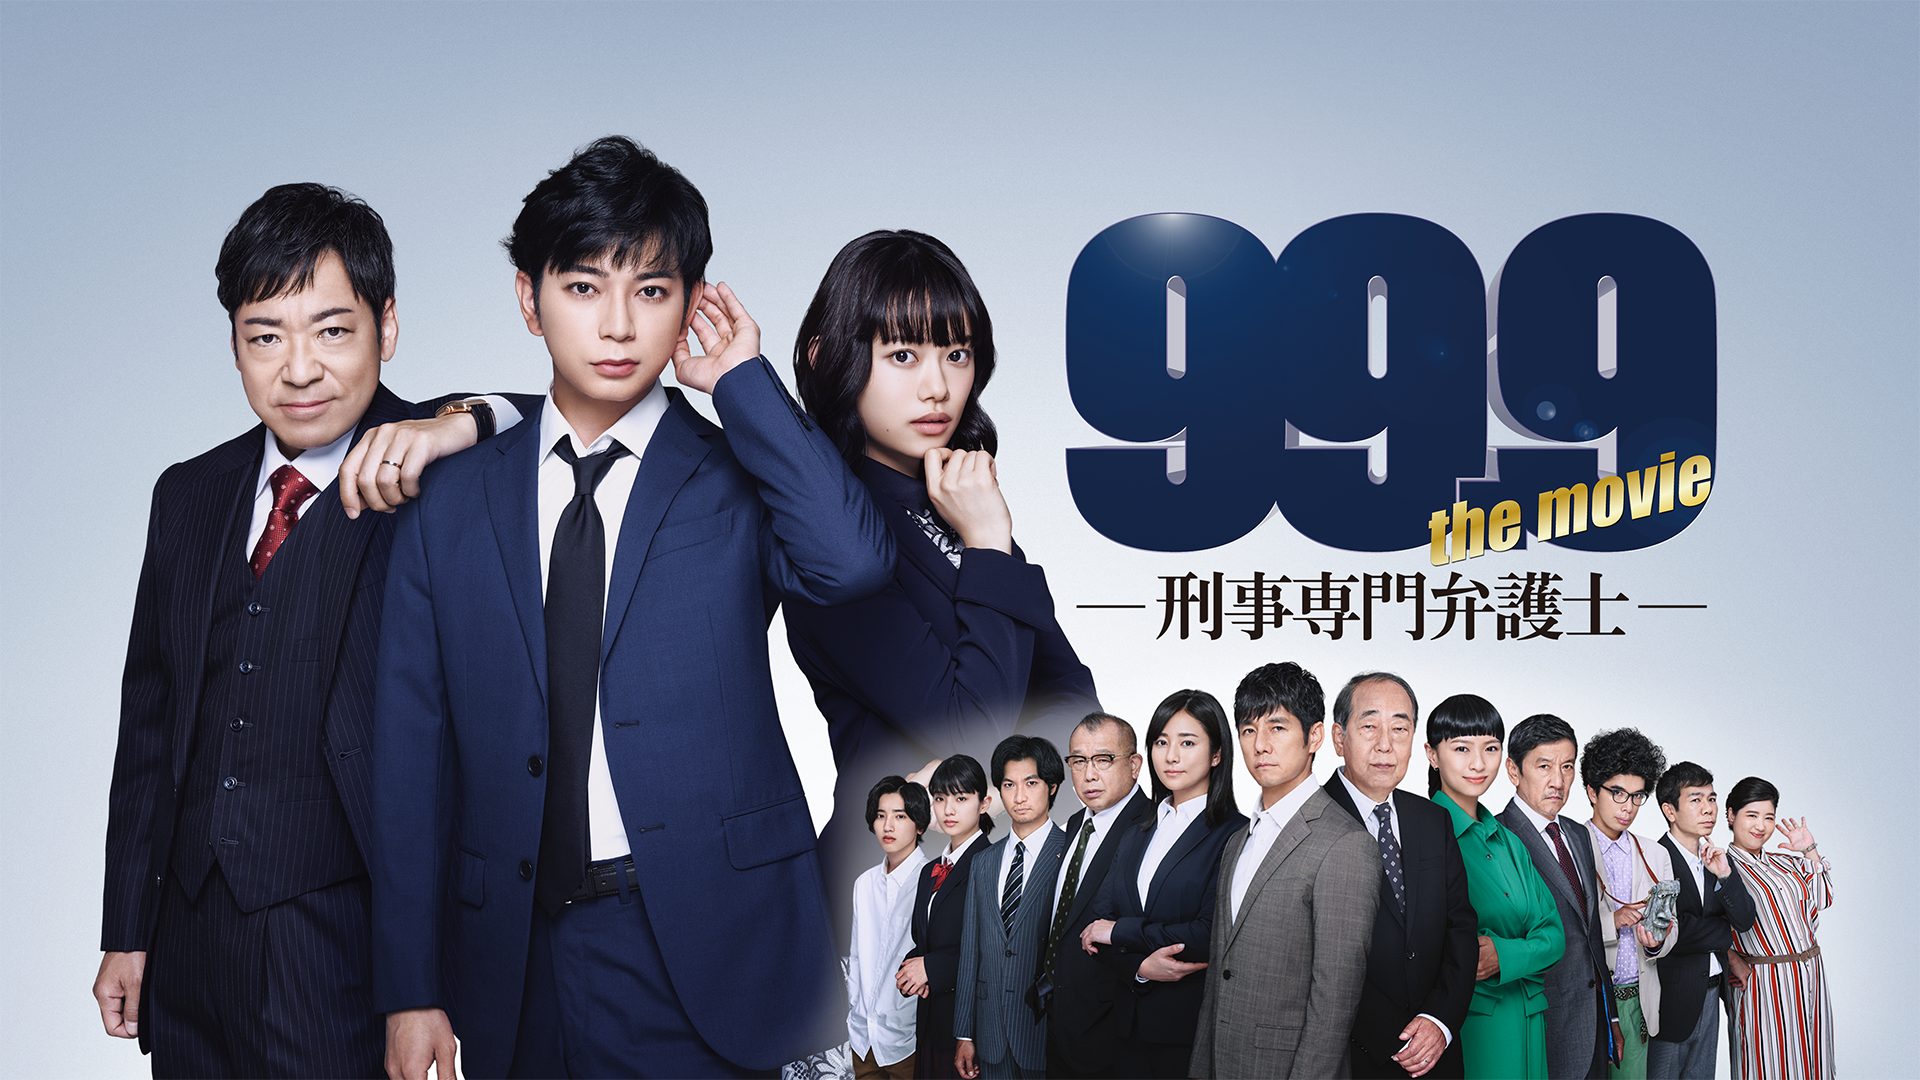 99.9-刑事専門弁護士-THE MOVIE(邦画 / 2021) - 動画配信 | U-NEXT 31 